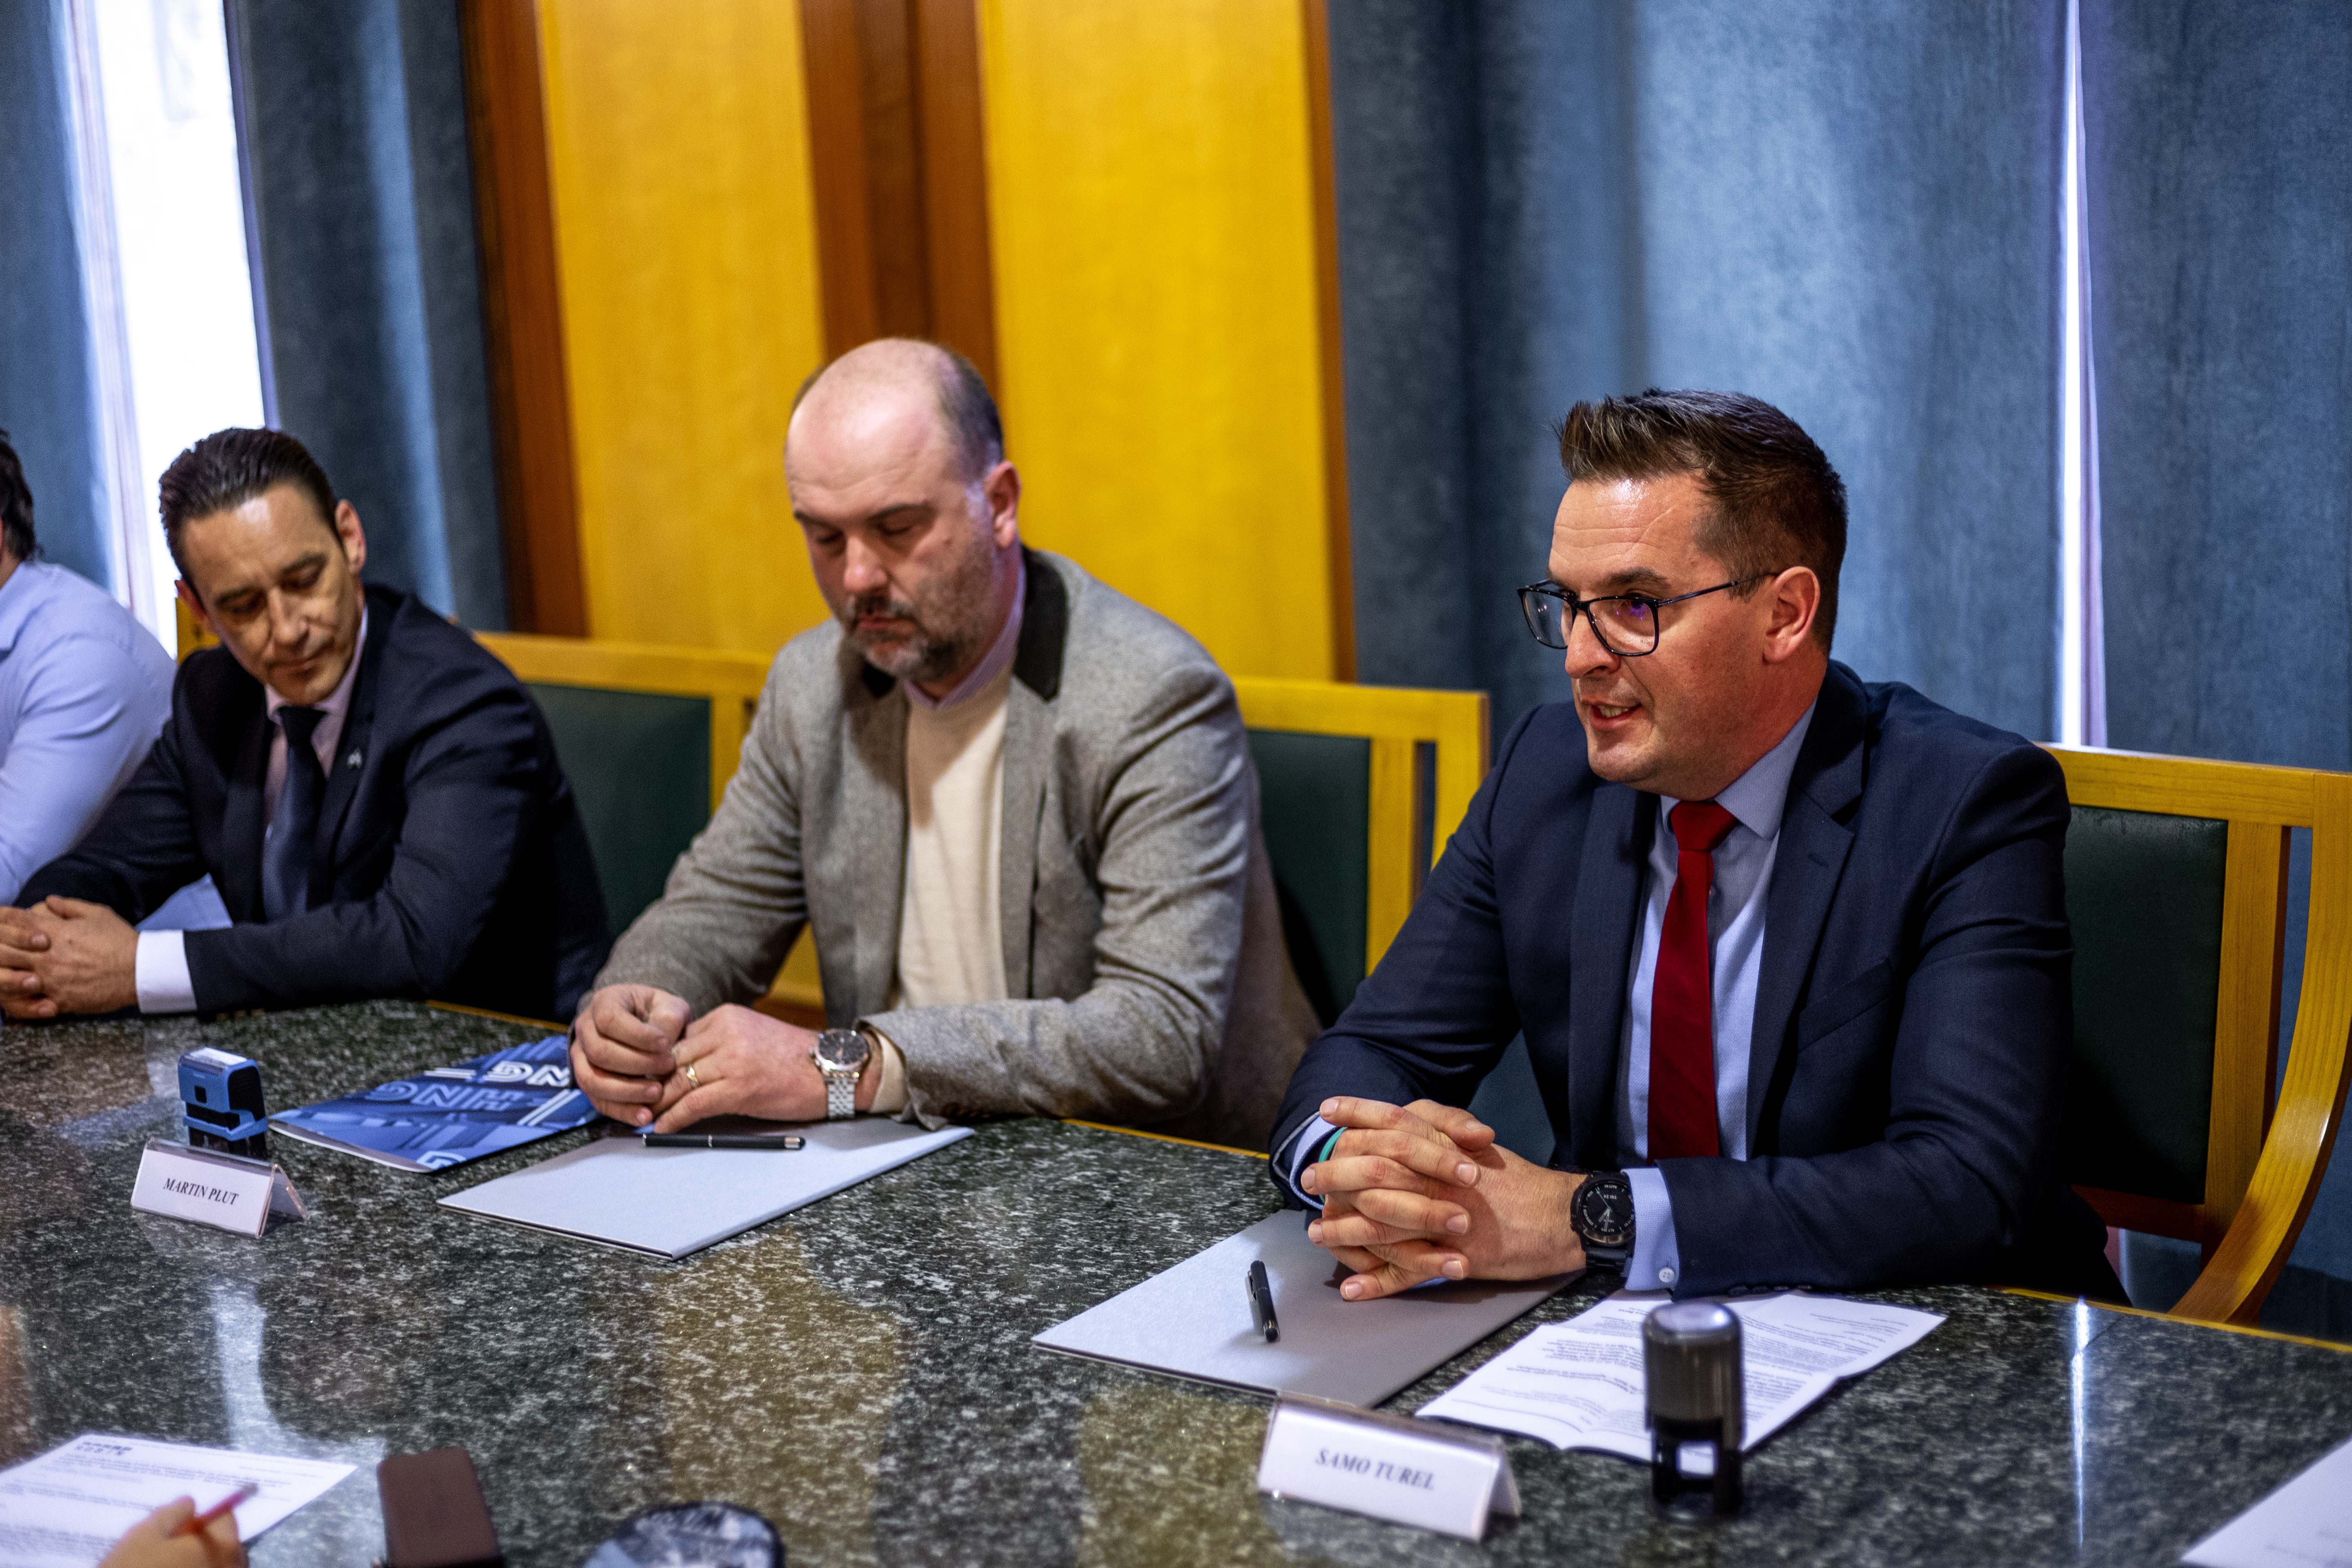 Župan Samo Turel z dvema predstavnikoma podjetja sedi za mizo v zeleni dvorani mestne občine